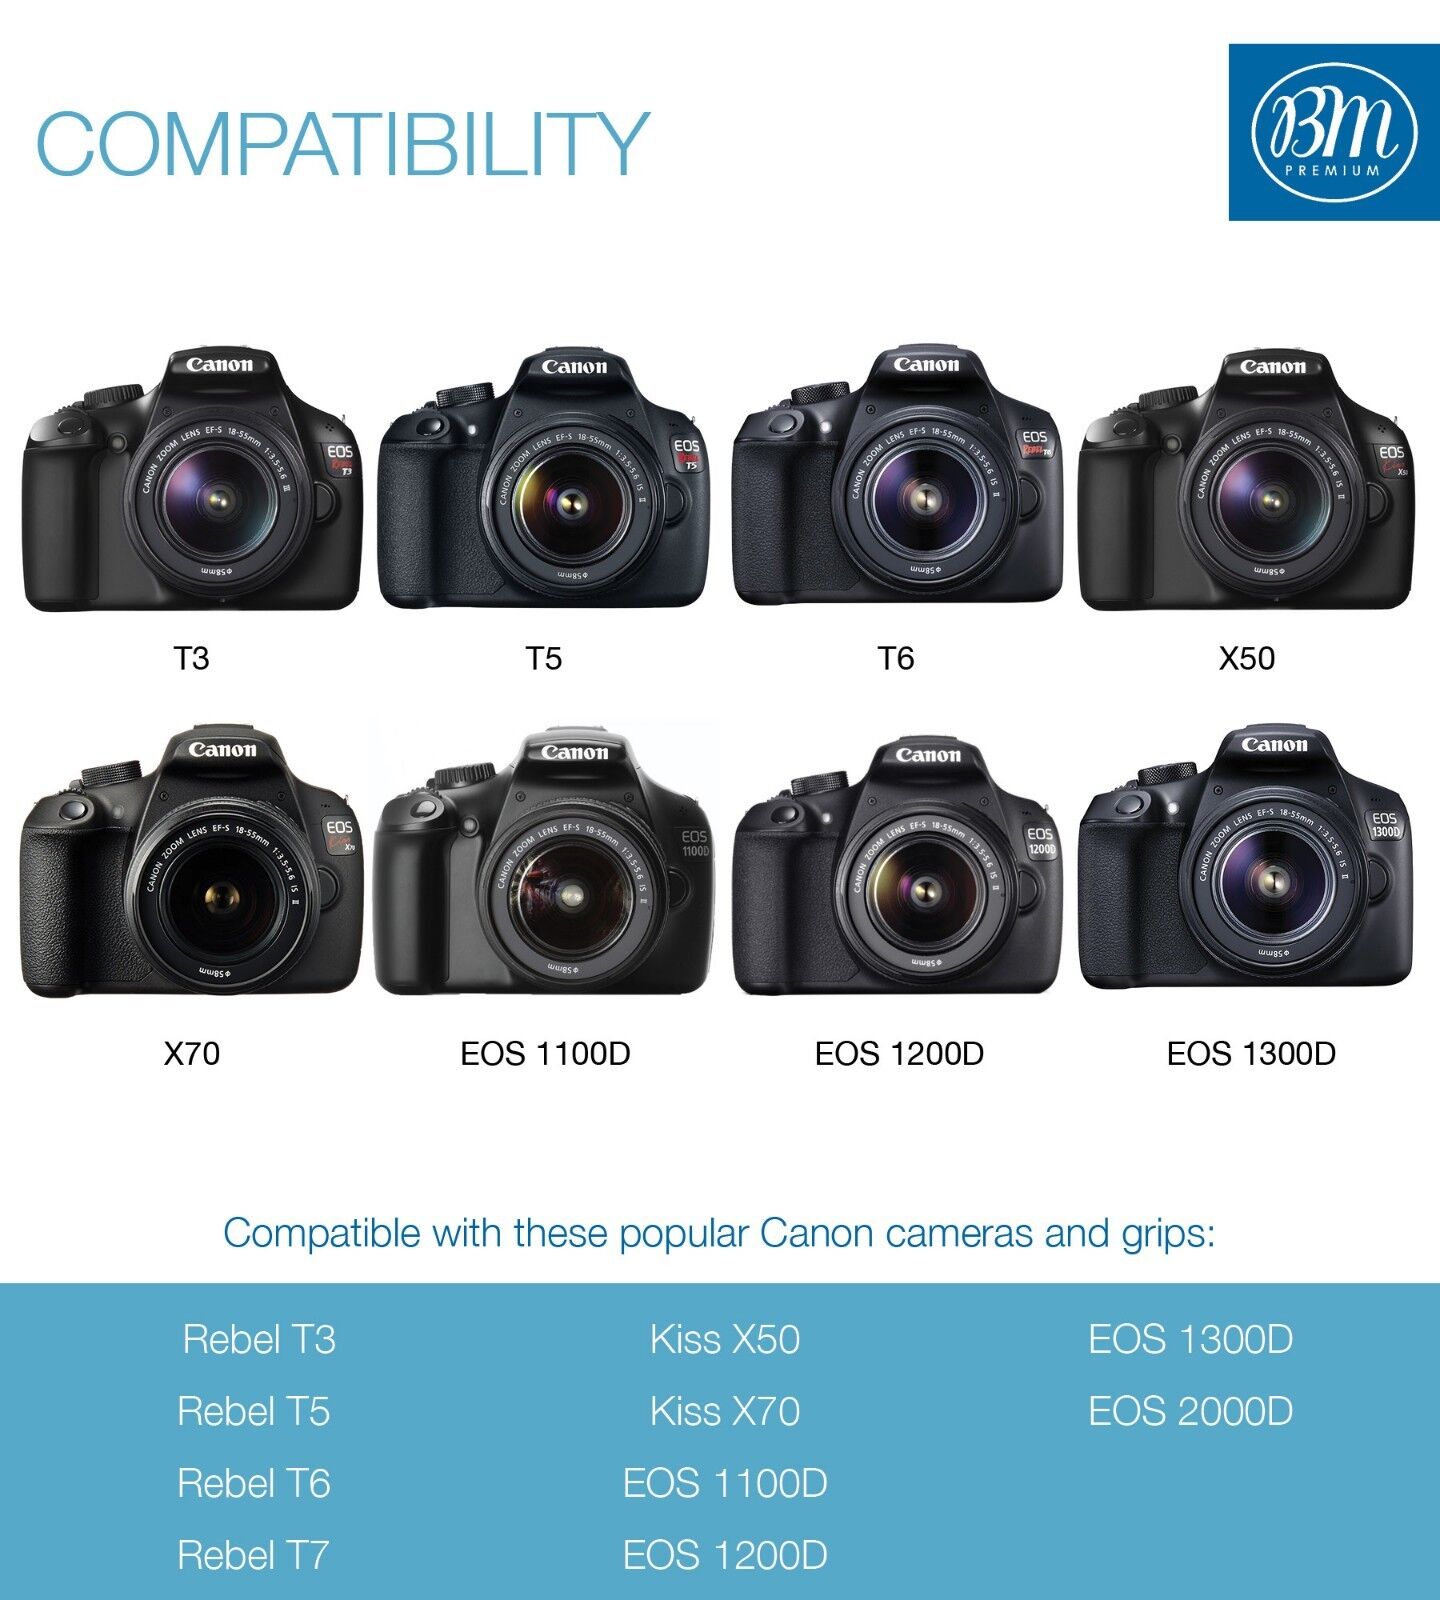 2 Pack LP-E10 Battery + Charger for Canon Rebel T3, T5, T6, T7, EOS 1200D, 1300D BM Premium BM-LPE10K4-A - фотография #6